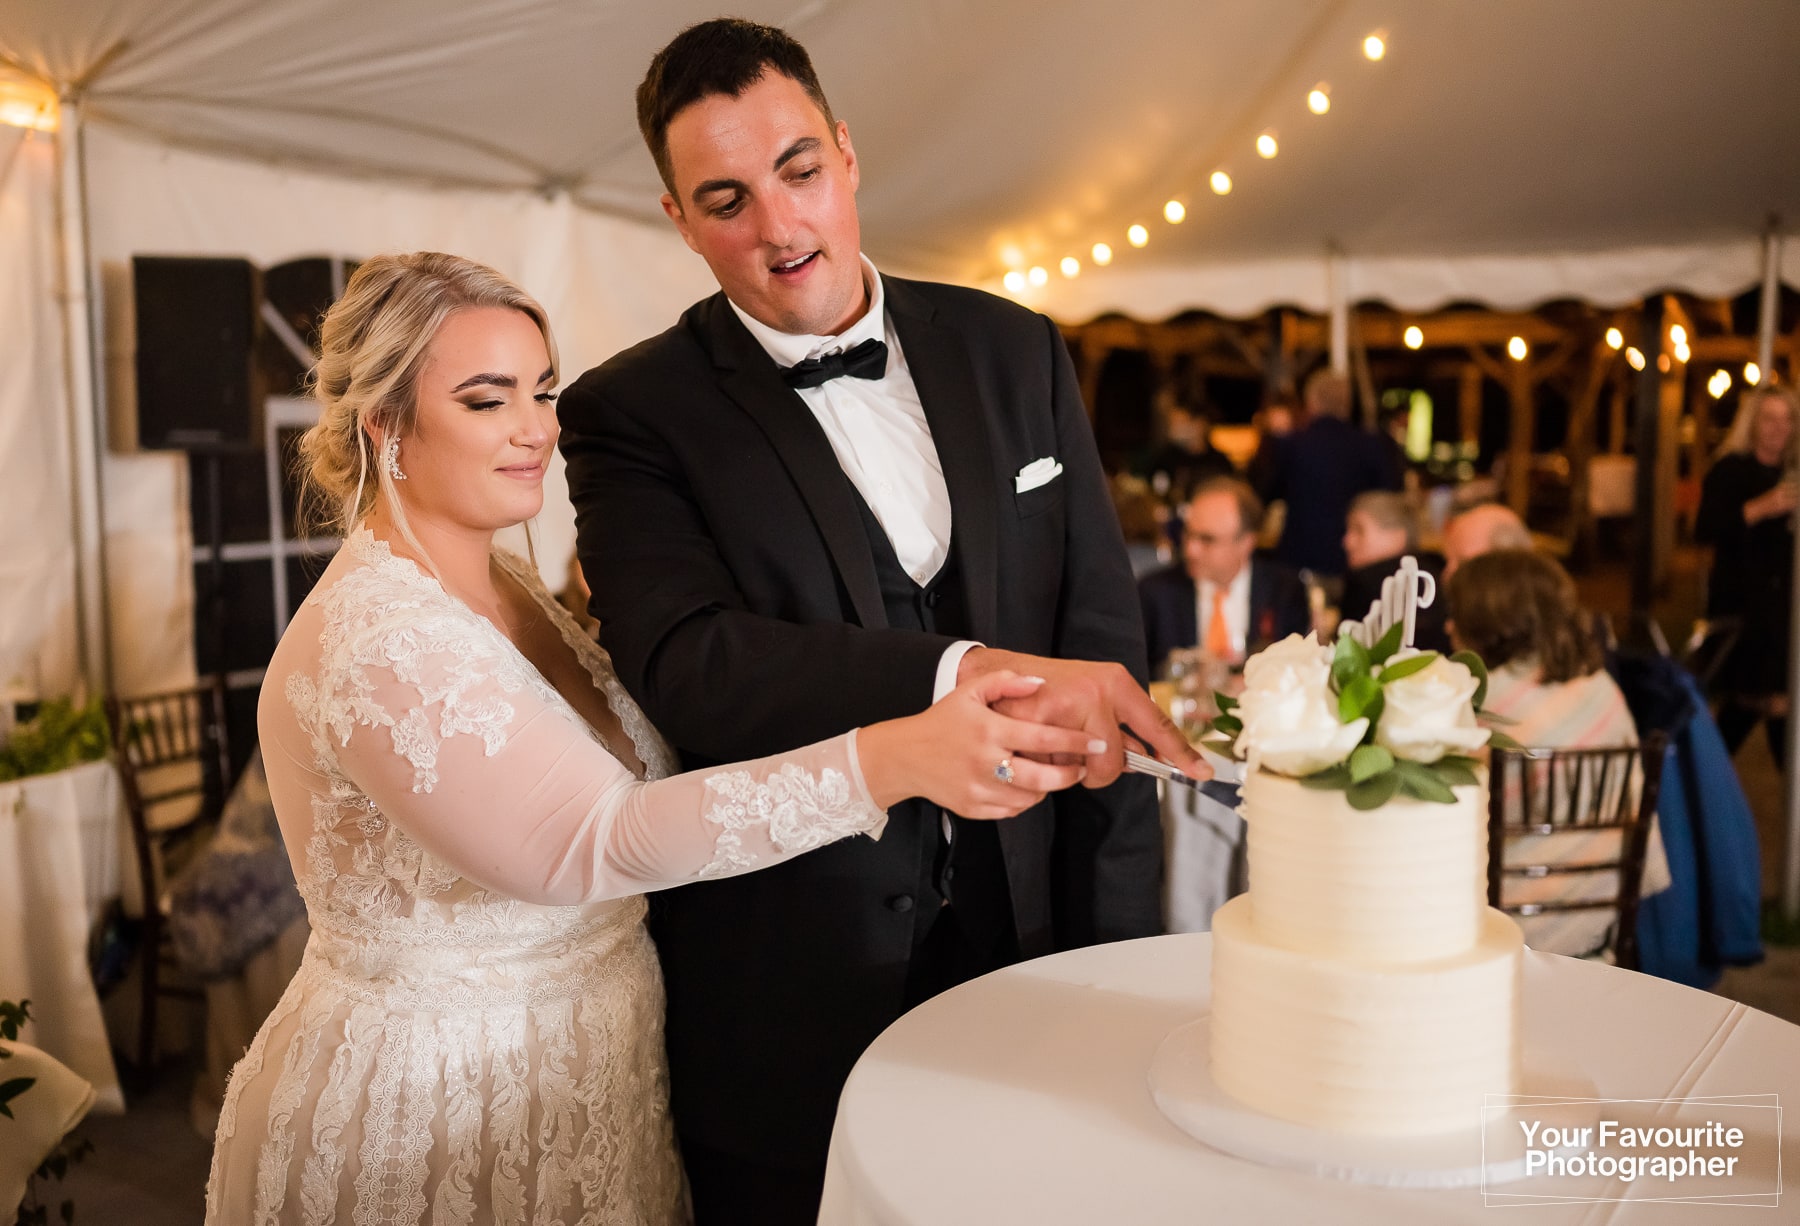 Cake cutting at wedding